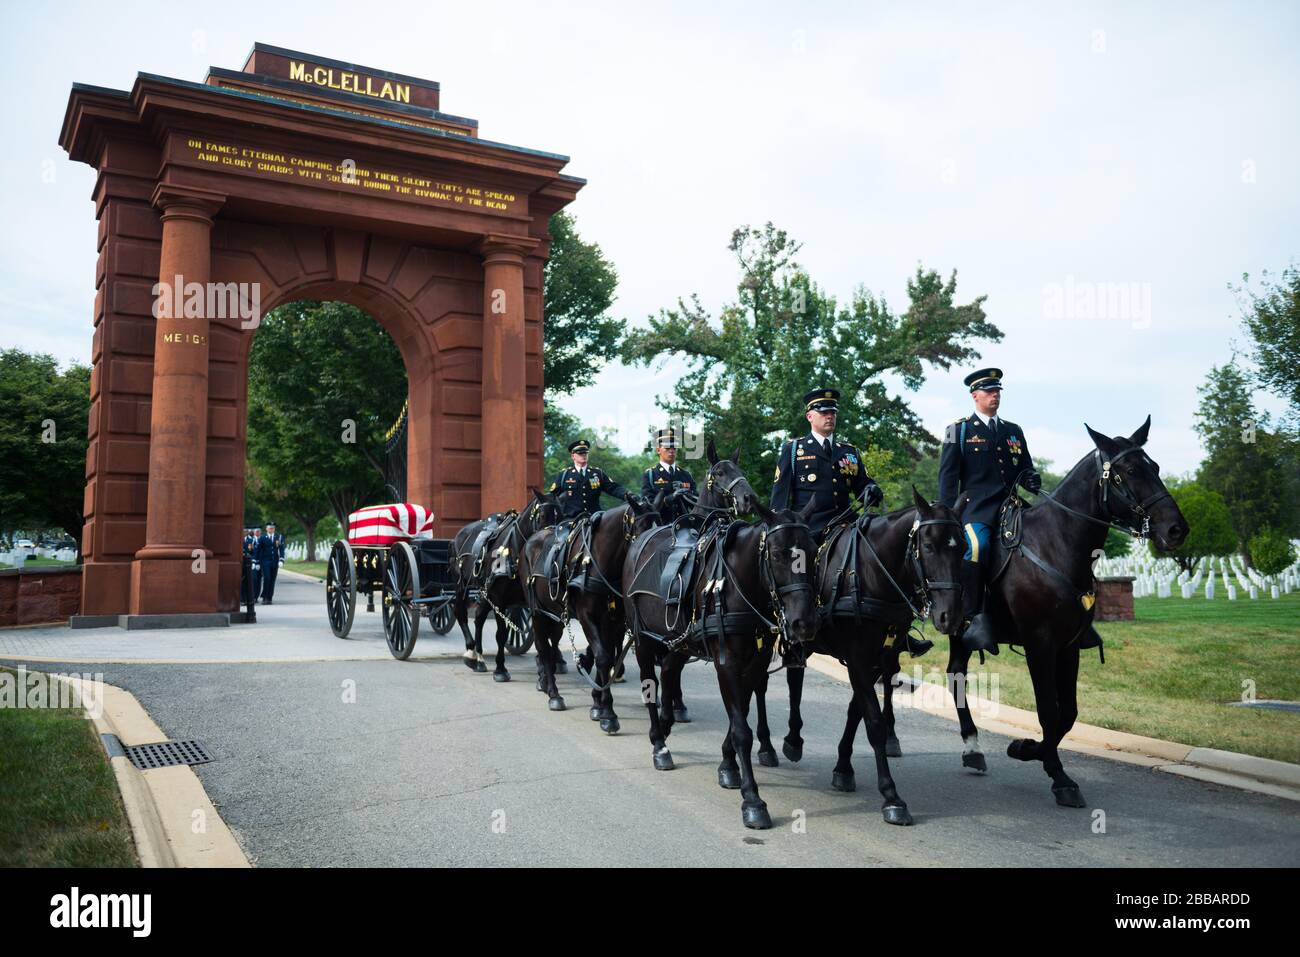 'La Guardia de honor de la Fuerza Aérea de los EE.UU., la banda de la Fuerza Aérea de los EE.UU. Y el regimiento de Infantería de los EE.UU. (La Guardia Vieja) Caisson Platoon participaron en un funeral de honor completo para el Coronel Robert Anderson de la Fuerza Aérea de los EE.UU. En la sección 55 del Cementerio Nacional de Arlington, Arlington, Virginia, 6 de octubre de 2017 Anderson, originalmente de Battle Creek, Michigan, se fue perdiendo el 6 de octubre de 1972 cuando su F-40 se estrelló en el norte de Vietnam. Sus restos fueron identificados el 22 de octubre de 1998. (EE.UU Foto del ejército de Elizabeth Fraser / Cementerio Nacional de Arlington / publicado); 6 de octubre de 2017, 13:52; Funeral de honor completo para el Coronel Robert de la Fuerza Aérea de los Estados Unidos Foto de stock